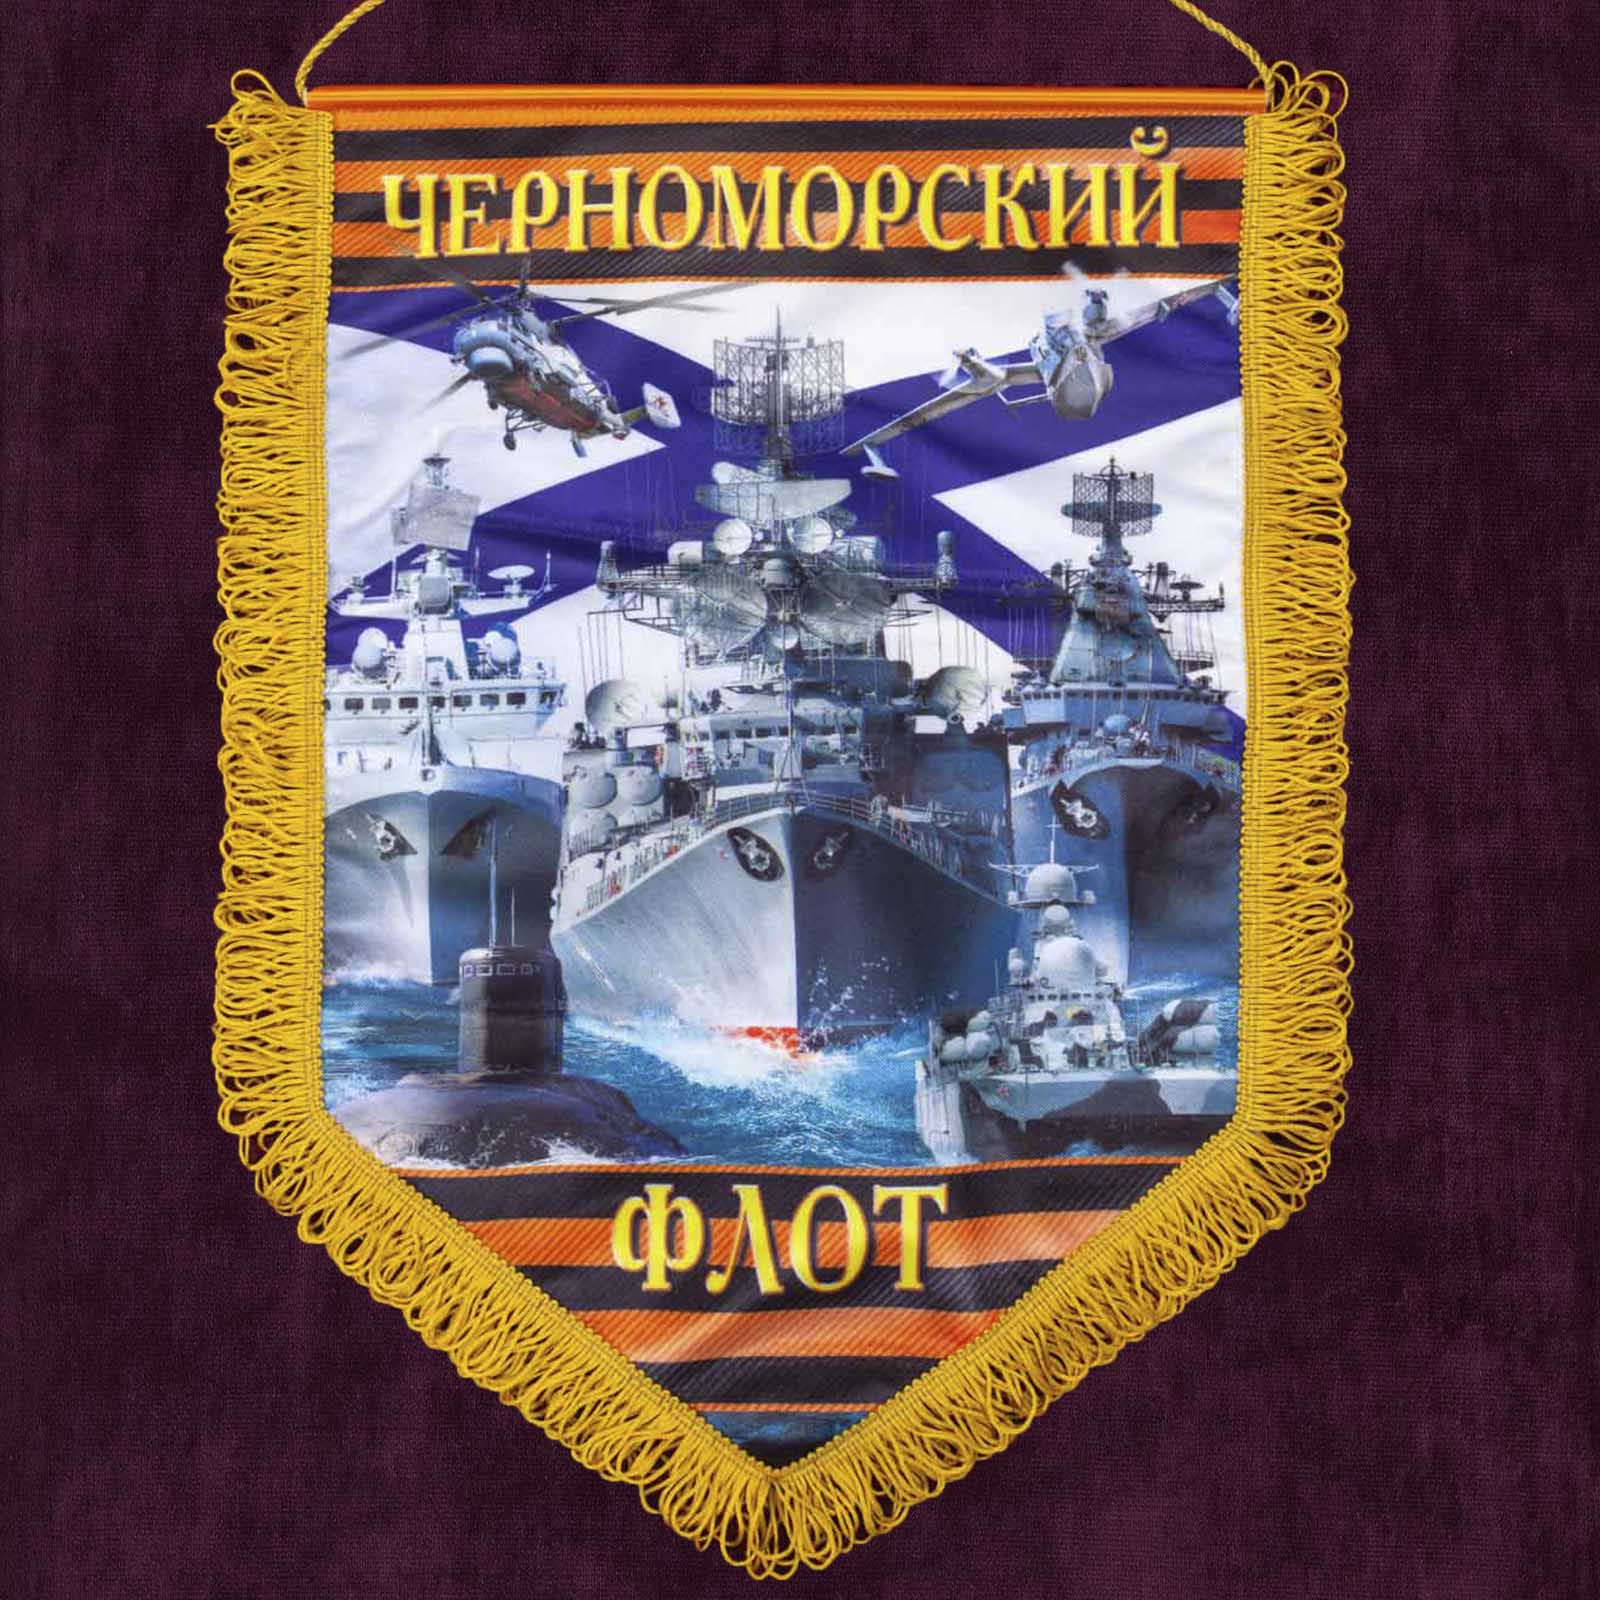 Настенный вымпел "Черноморский флот" - отменный подарок моряку